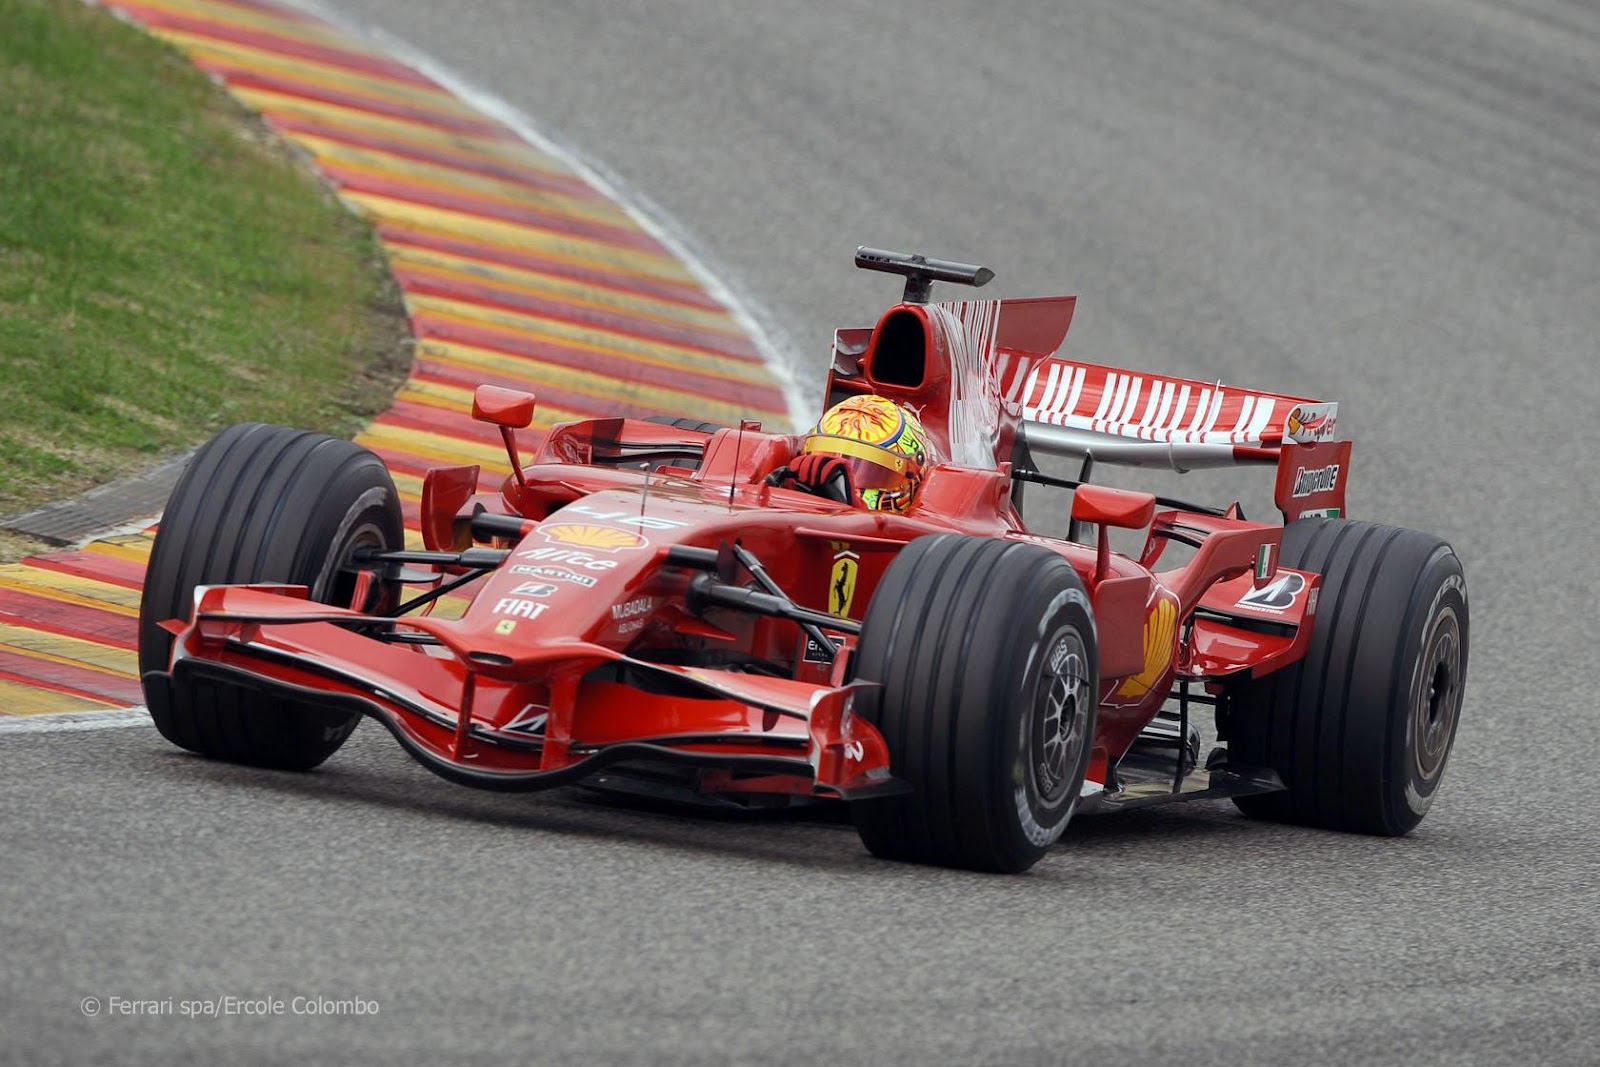 Valentino Rossi driving a Ferrari.